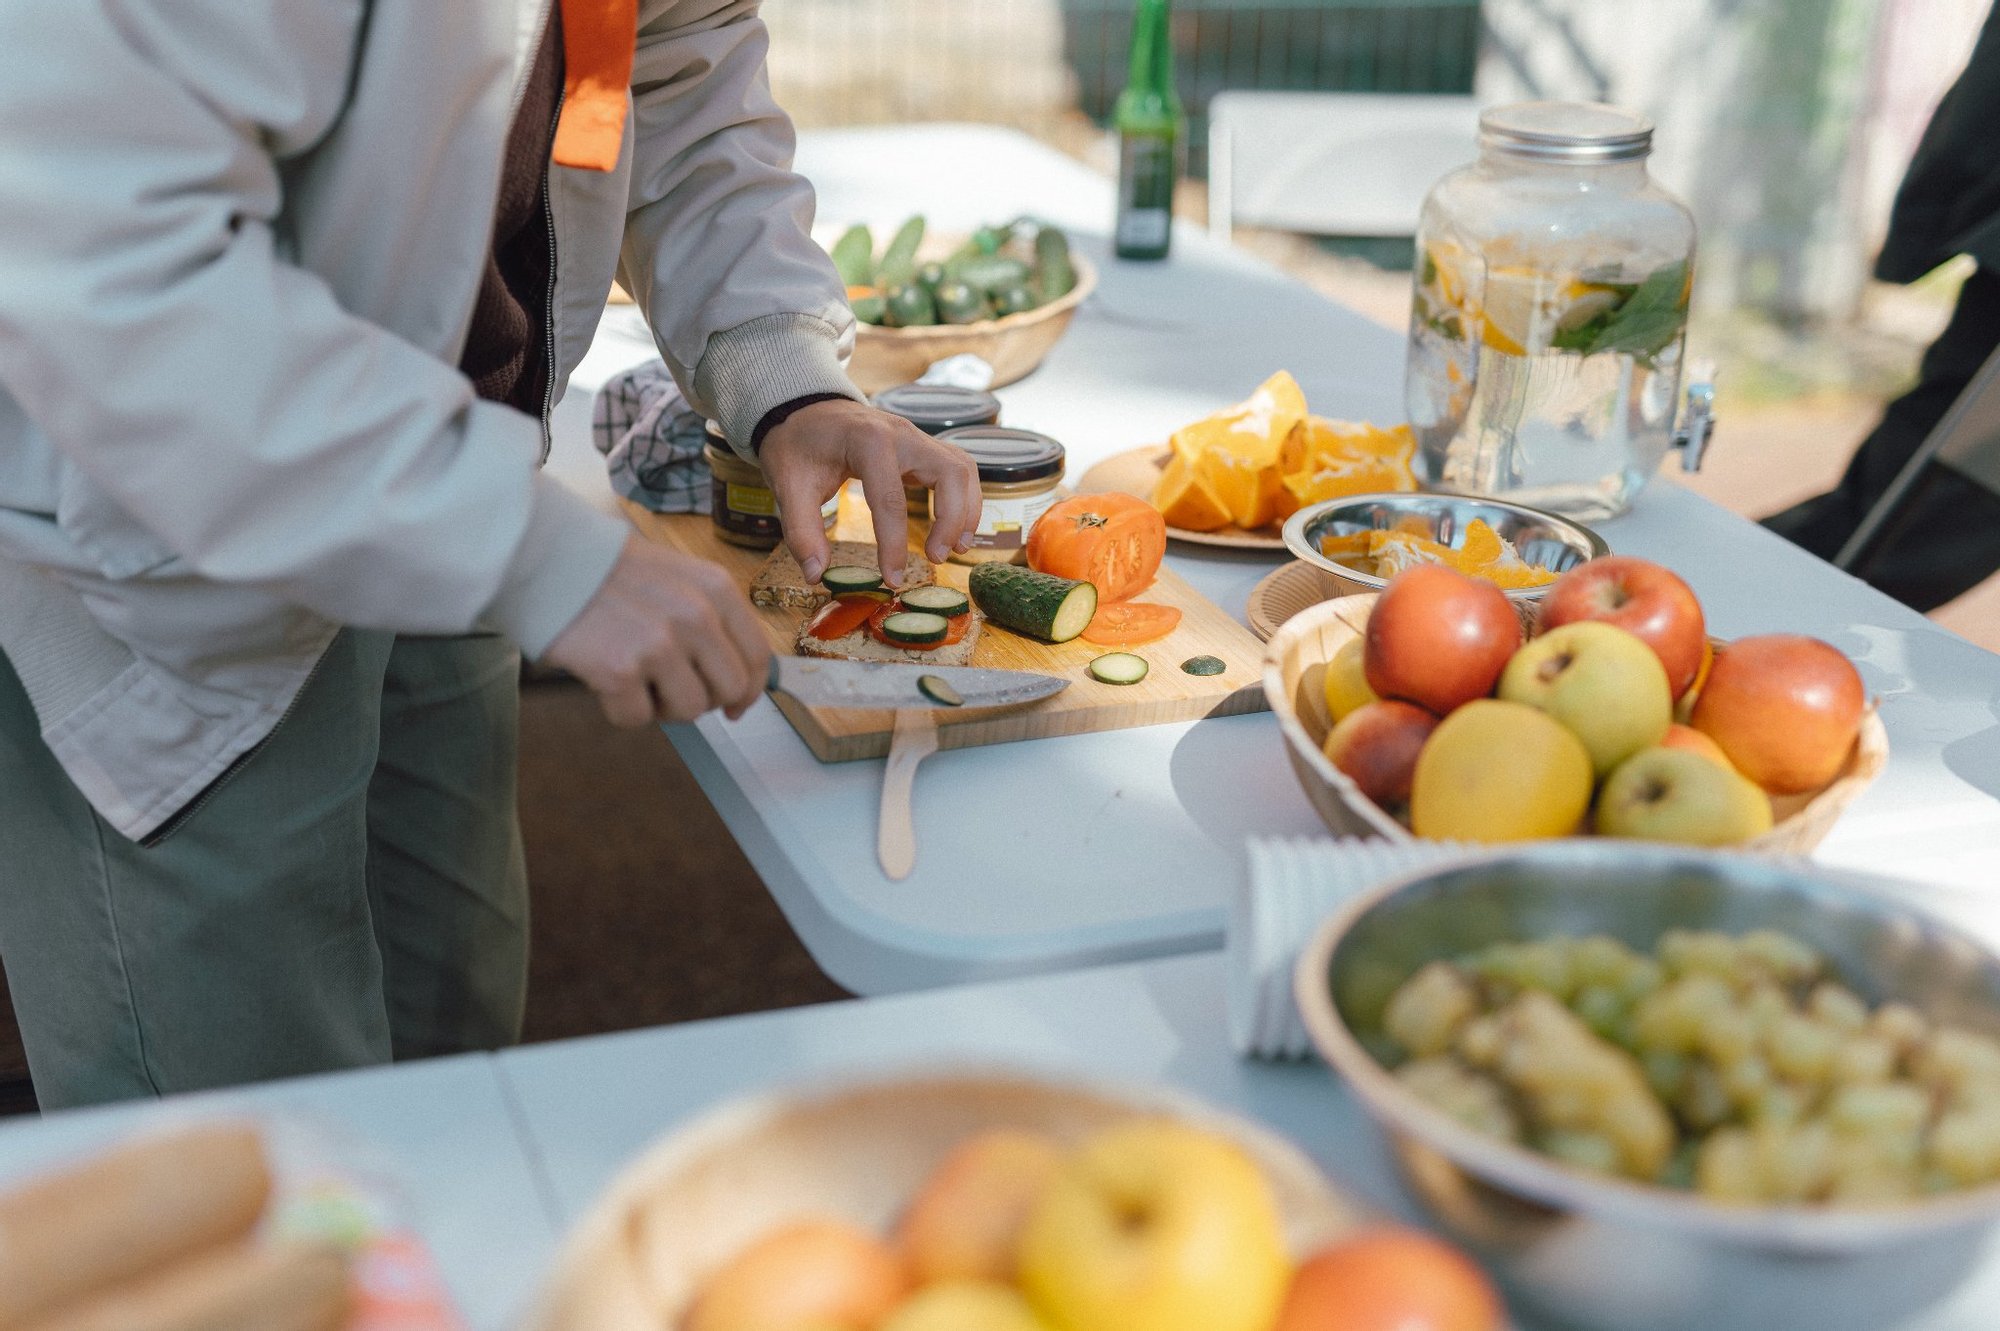 Na stołach rozstawionych na świeżym powietrzu stoi dużo owoców, warzyw oraz ciast. Przy stole stoją ludzie w różnym wieku i przygotowują potrawy.